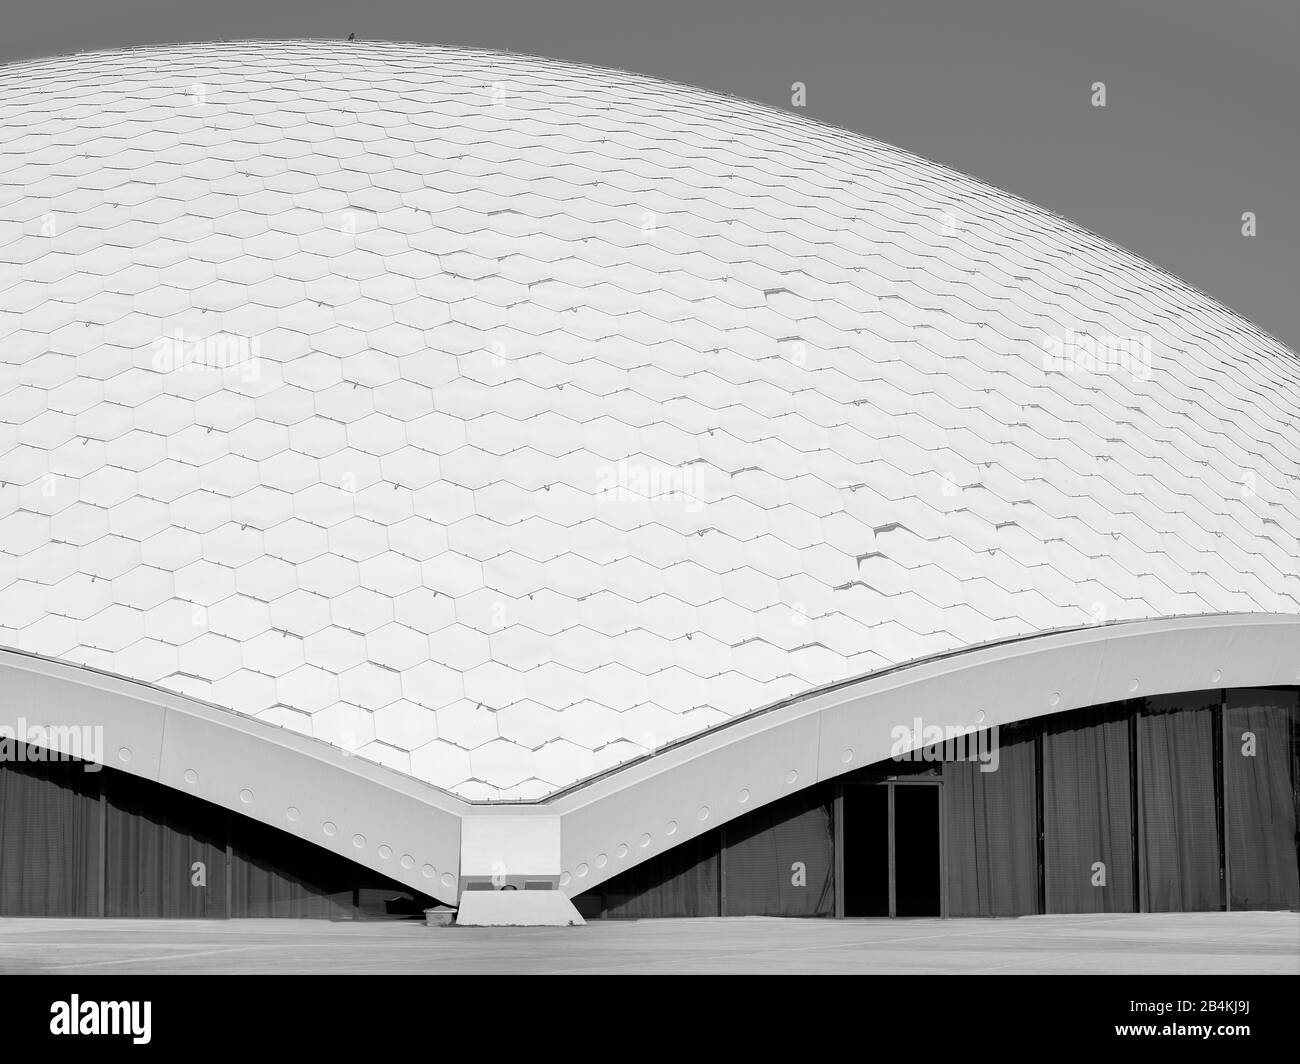 Die Schale des Dachs der Jahrhunderthalle Frankfurt, mit seinen sechseckigen Schindeln und der Randversteifung Foto Stock